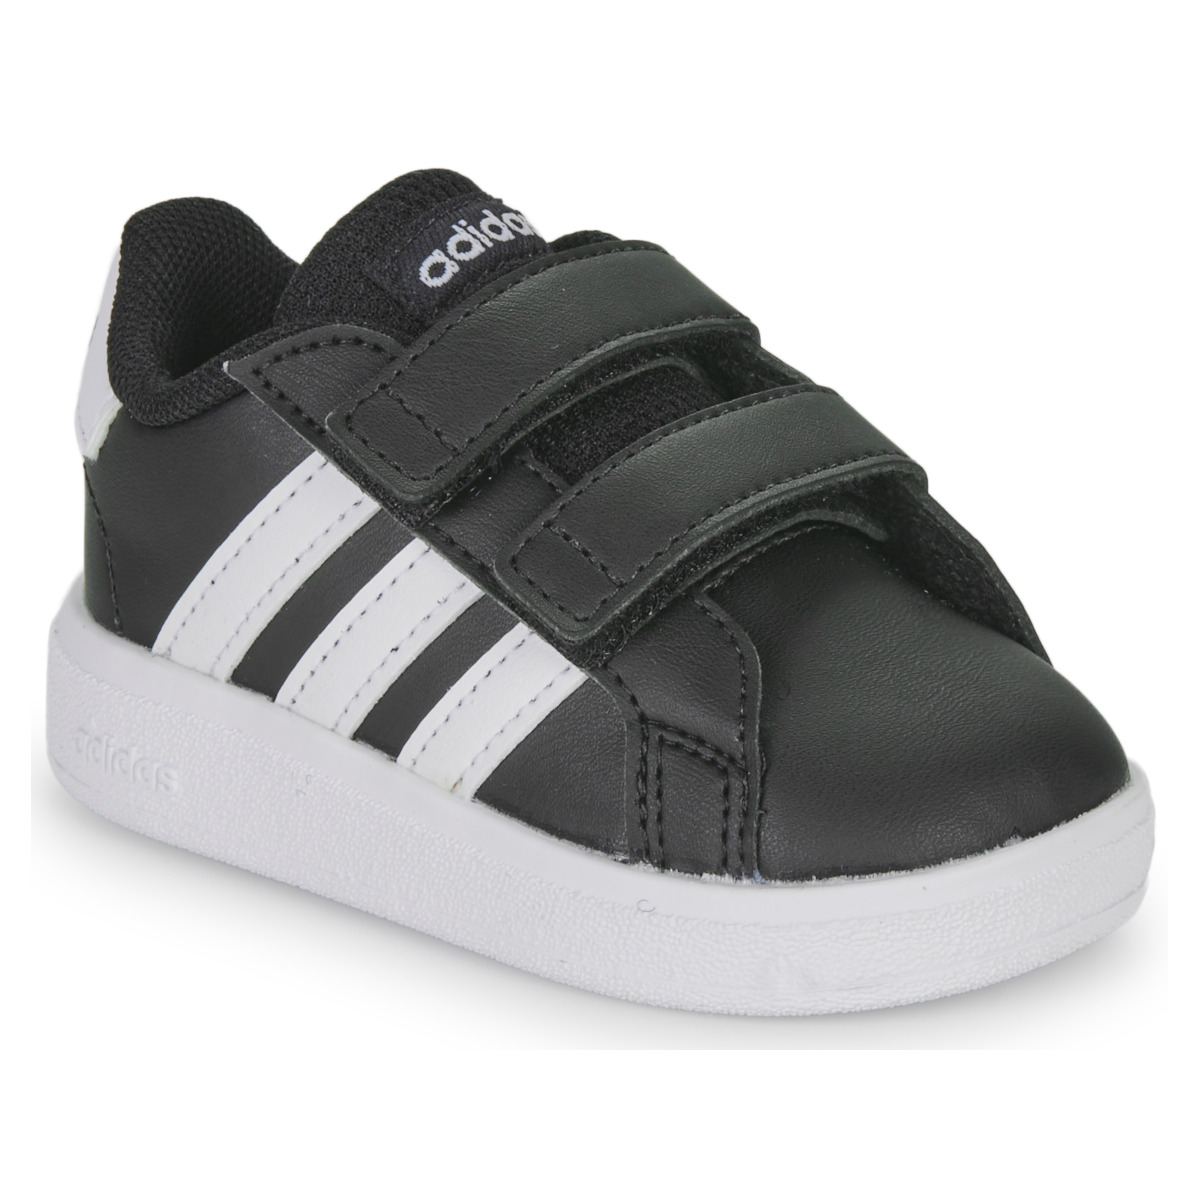 kengät Lapset Matalavartiset tennarit Adidas Sportswear GRAND COURT 2.0 CF Musta / Valkoinen